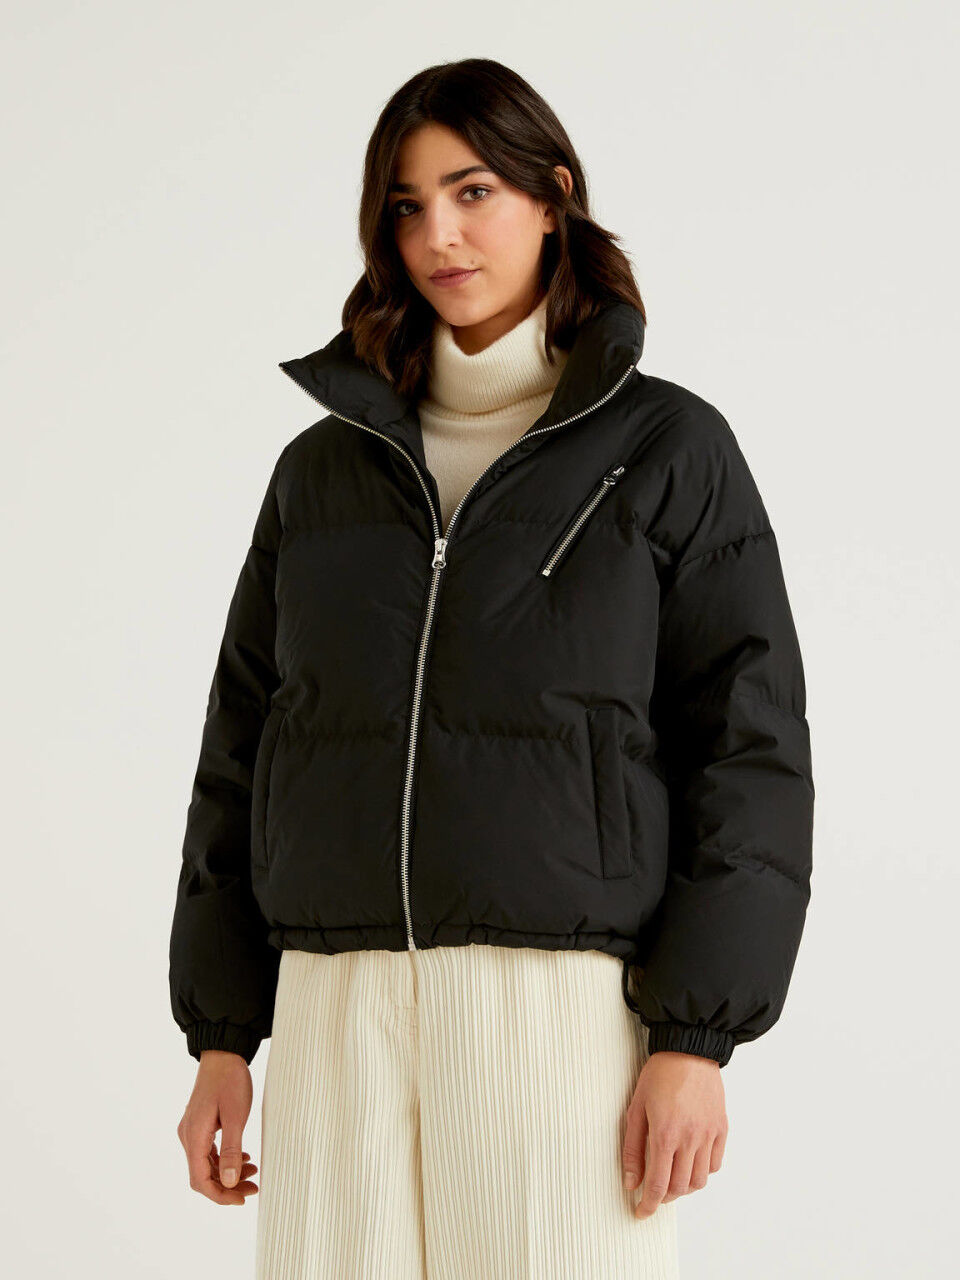 Women's Winter Puffer Jackets New 